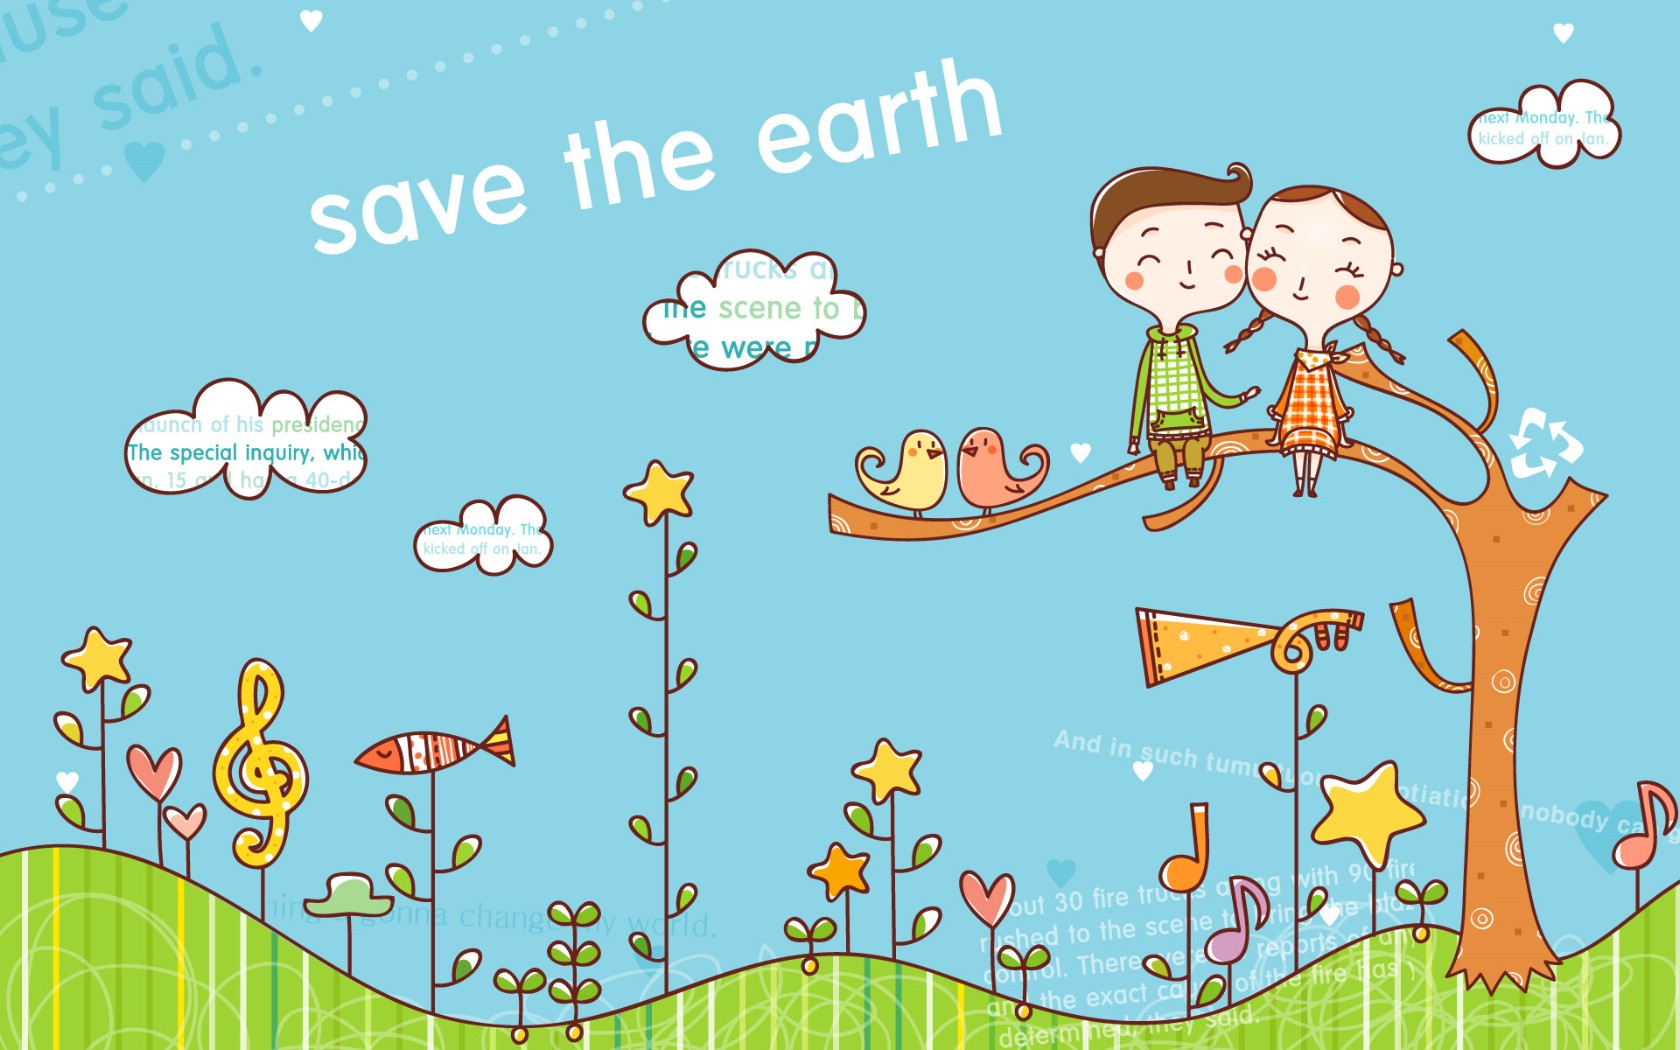 壁纸1680x1050拯救地球 2 13壁纸 拯救地球壁纸 拯救地球图片 拯救地球素材 矢量壁纸 矢量图库 矢量图片素材桌面壁纸